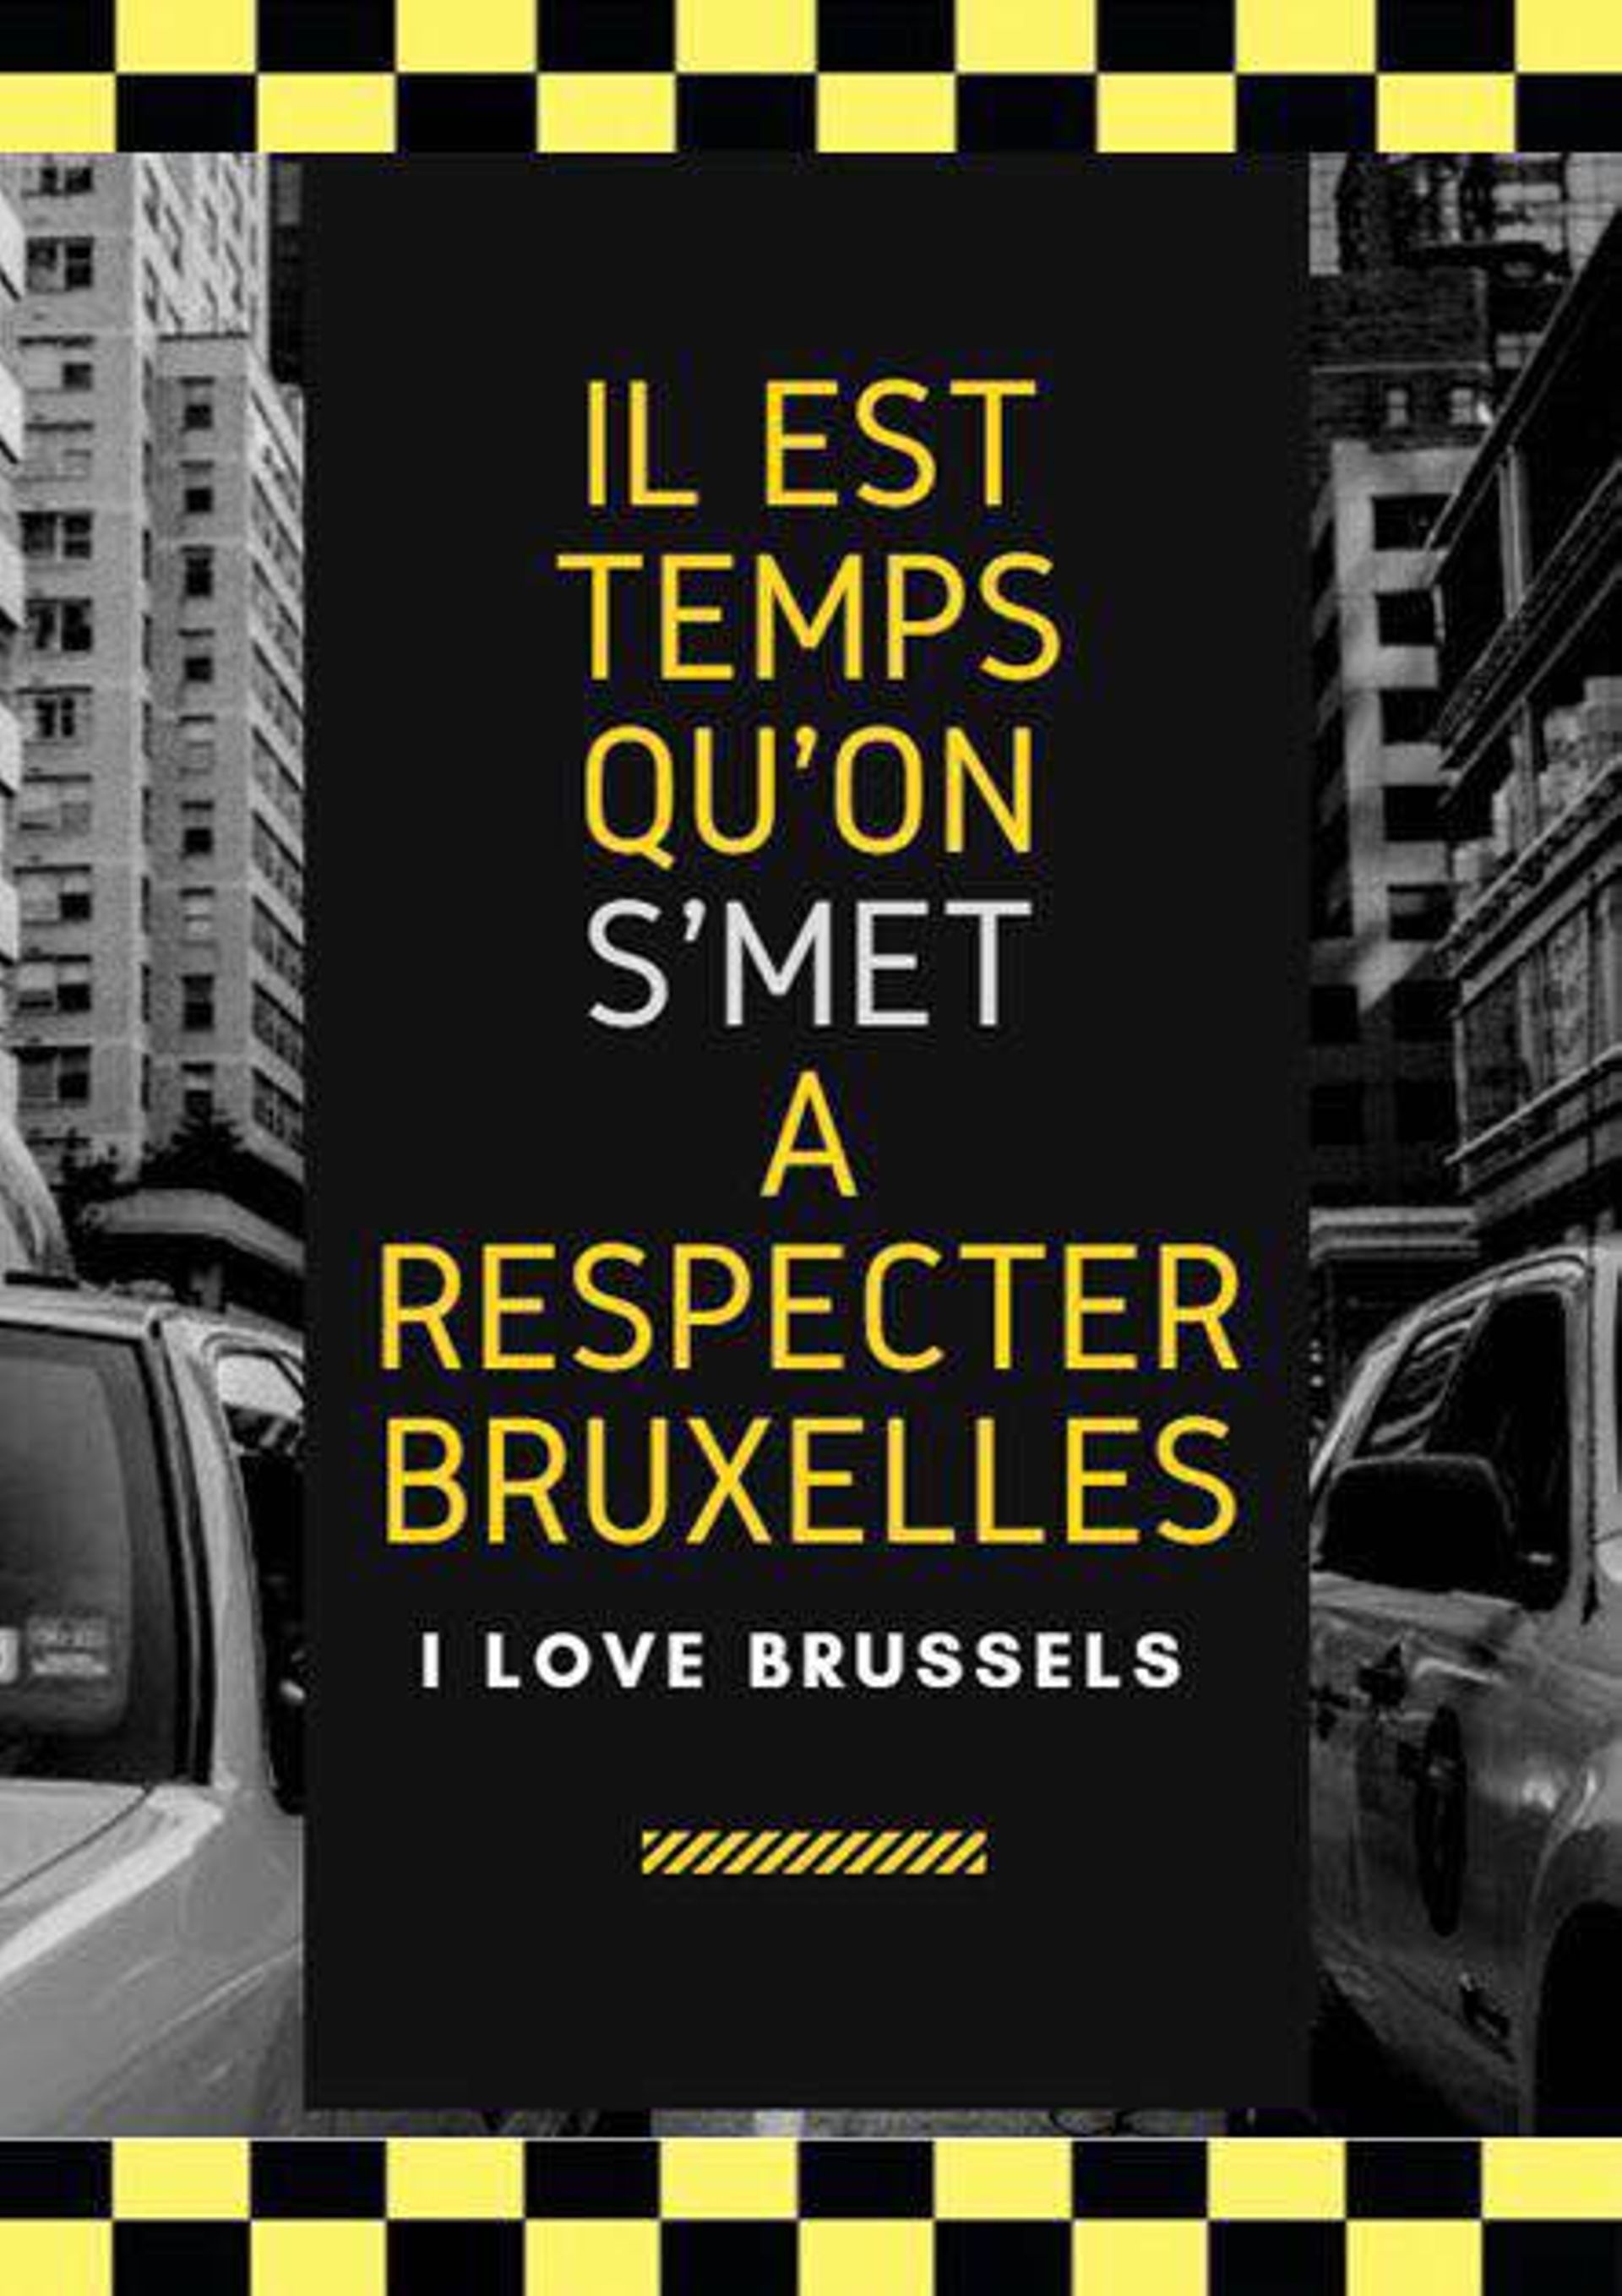 Campagne des taximen bruxellois